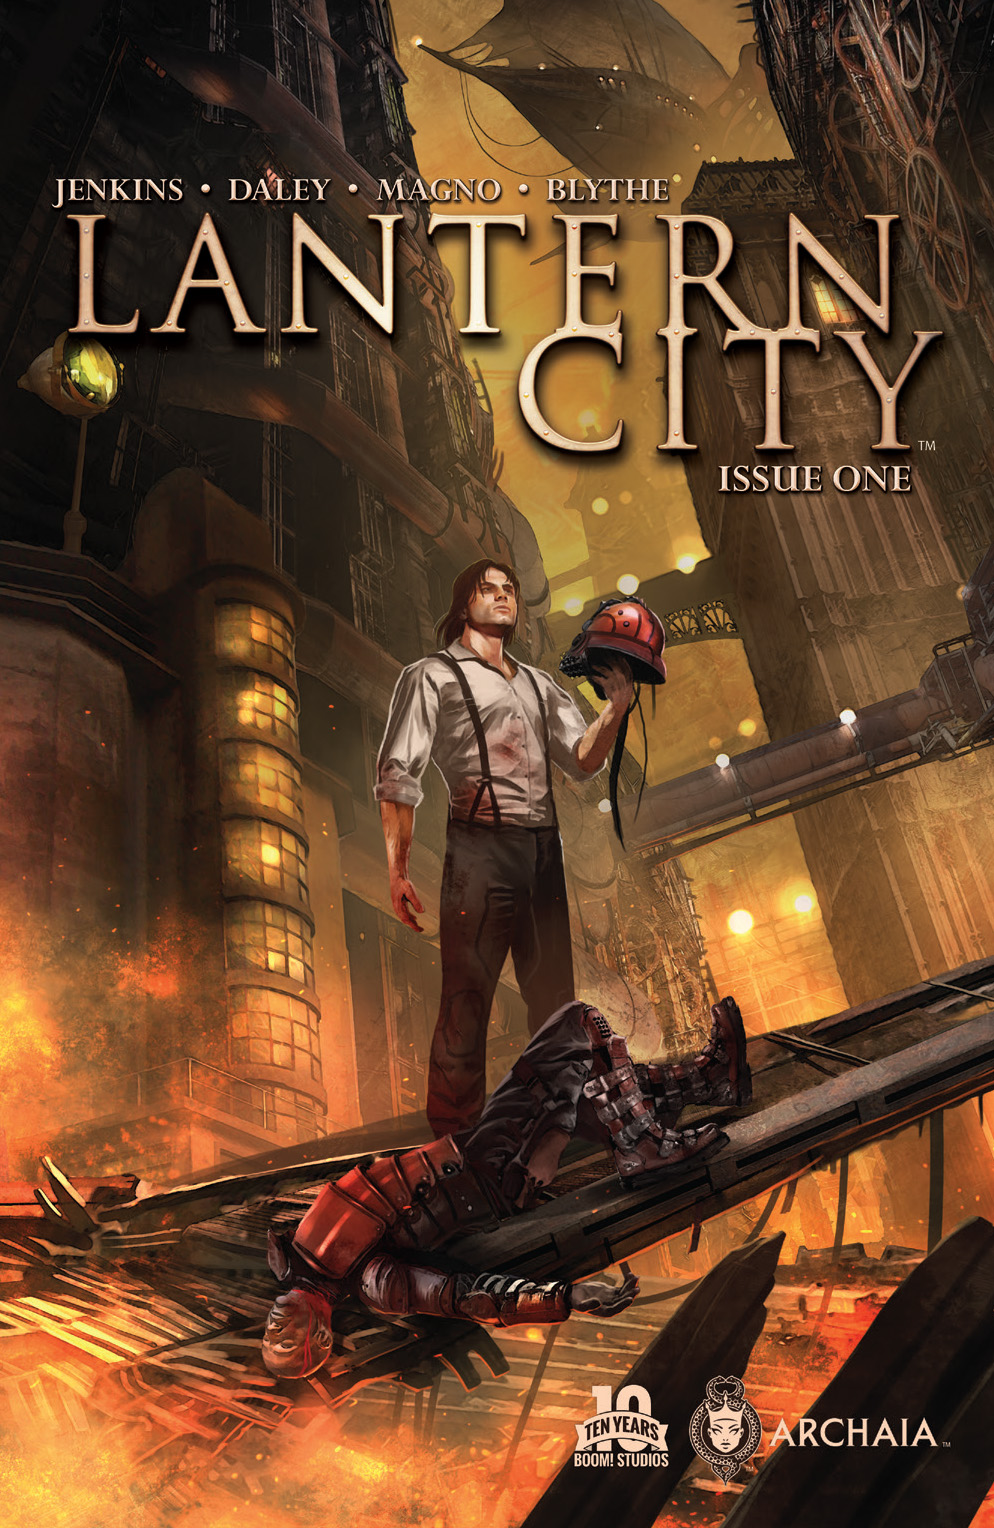 Lantern City #1 Preview